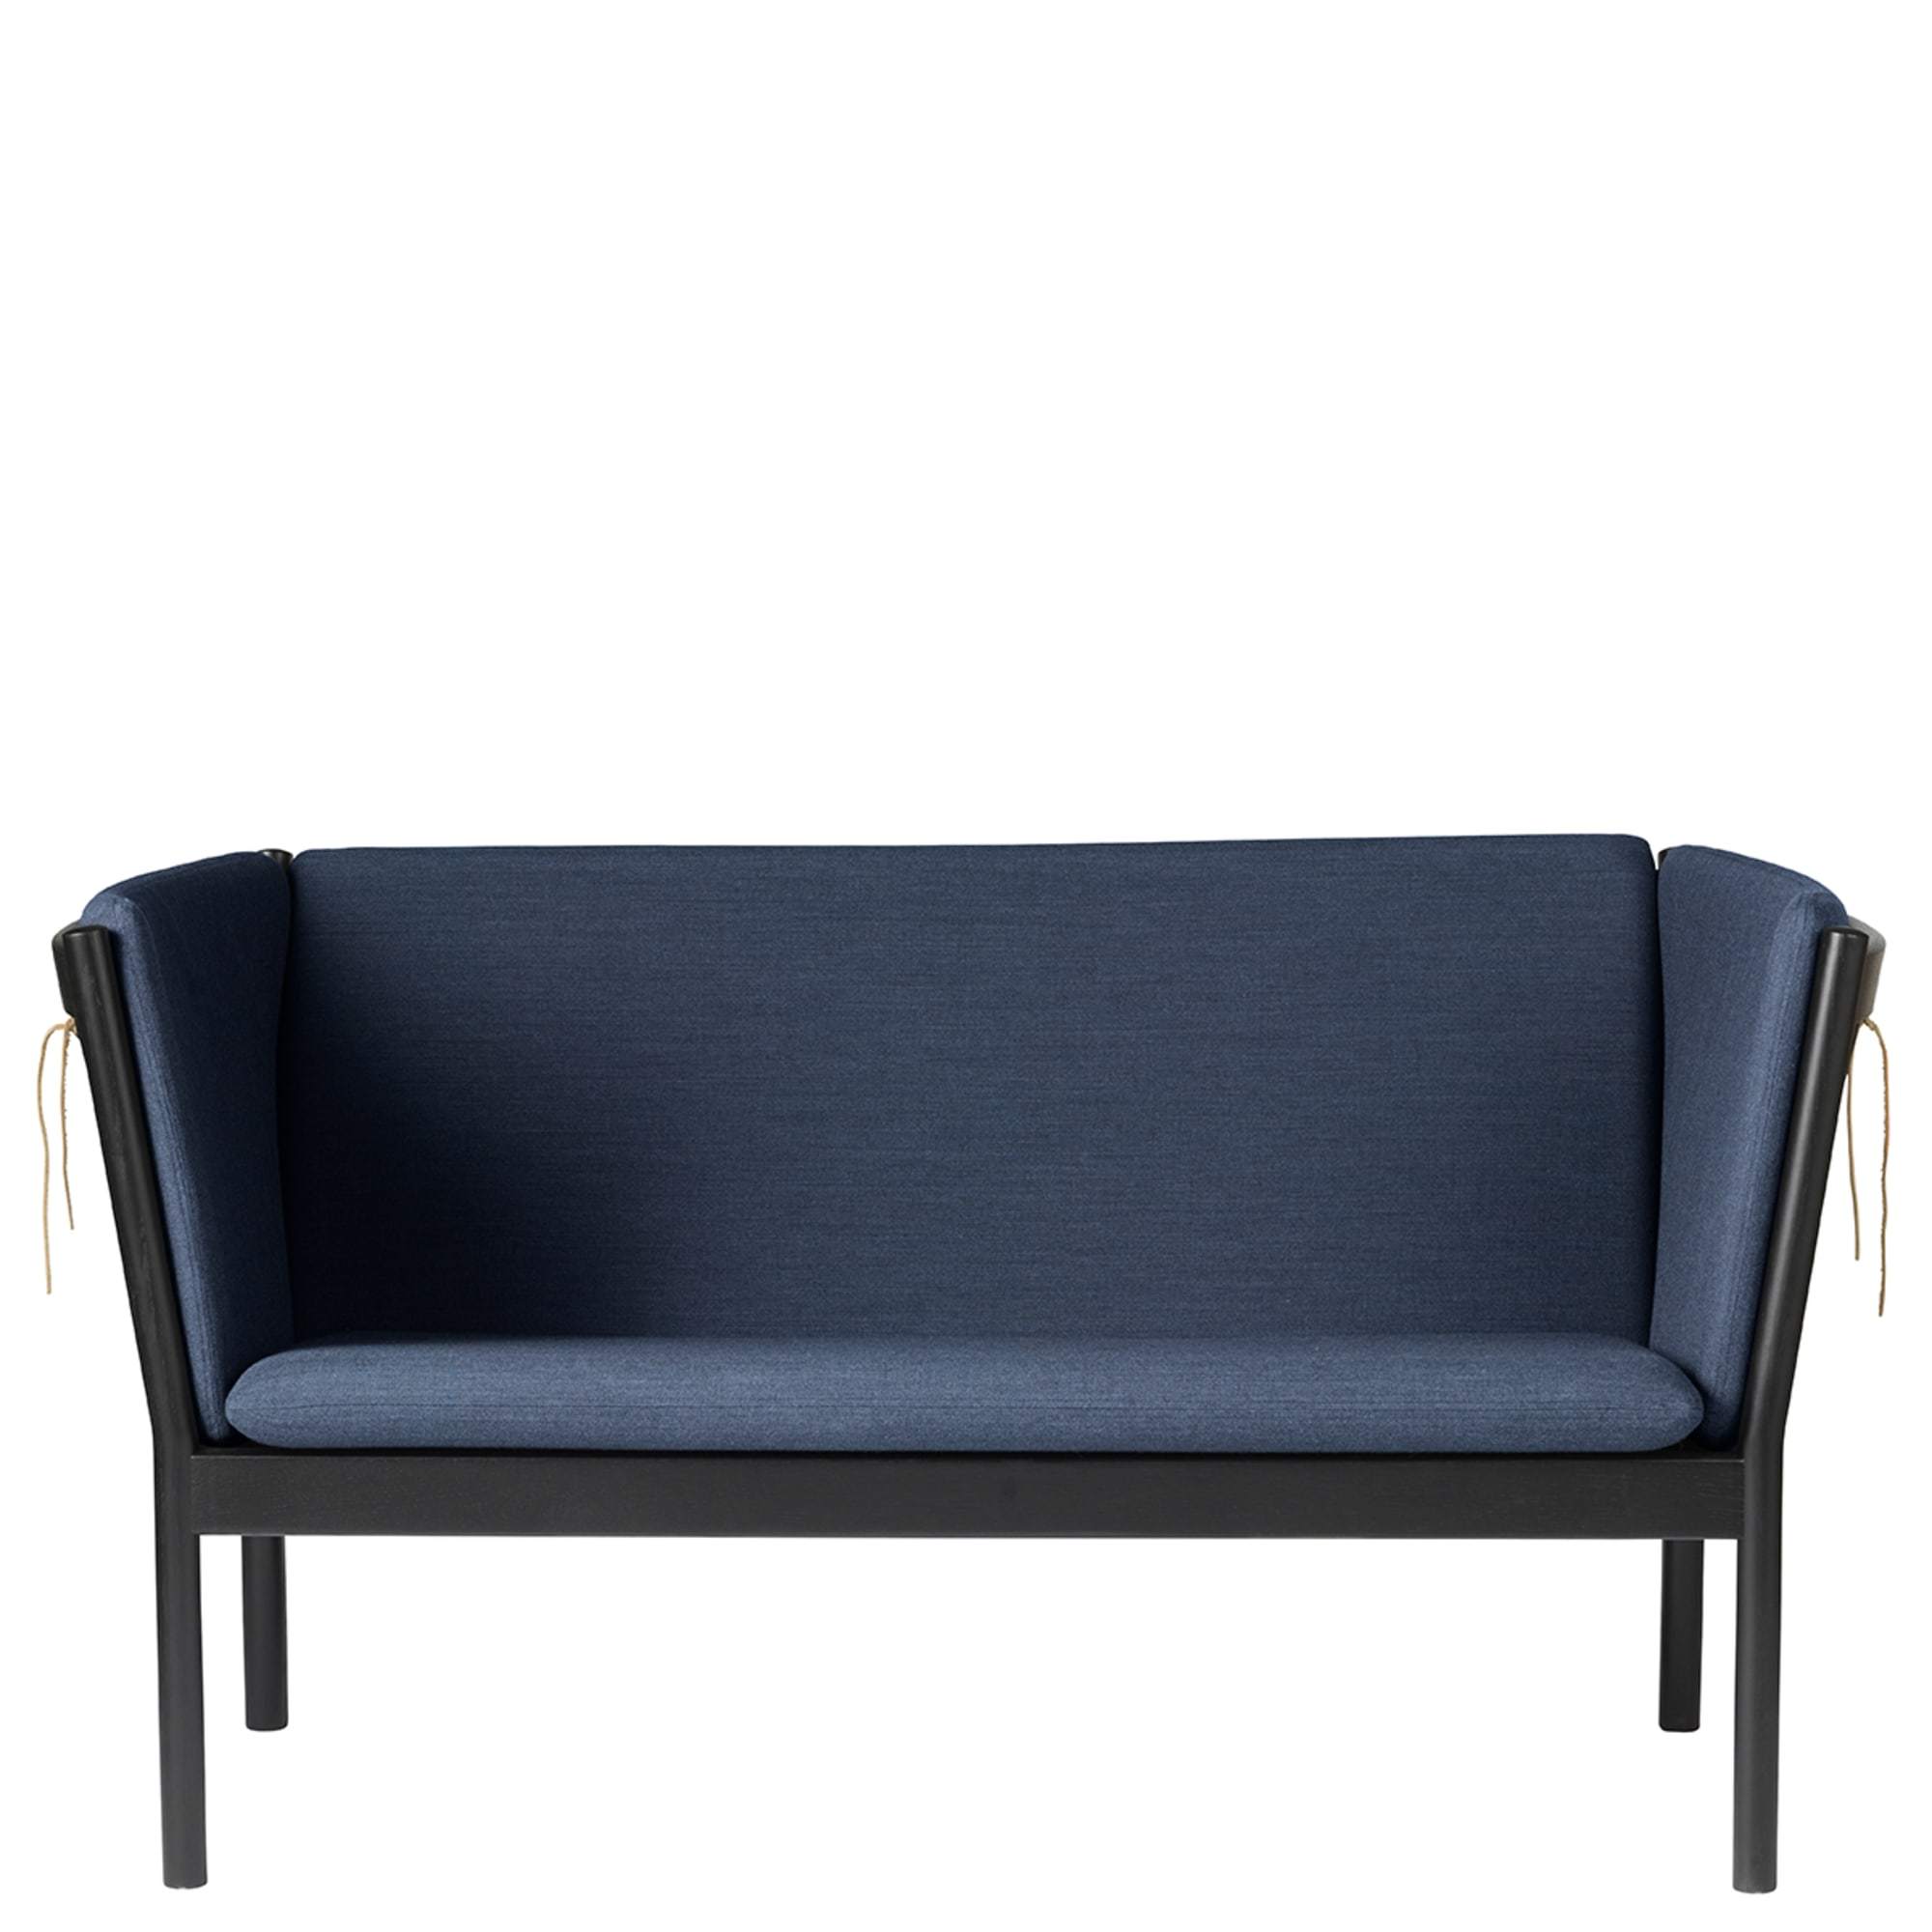 Fdb Møbler J148 2 Person Sofa, Black Oak, Dark Blue Fabric